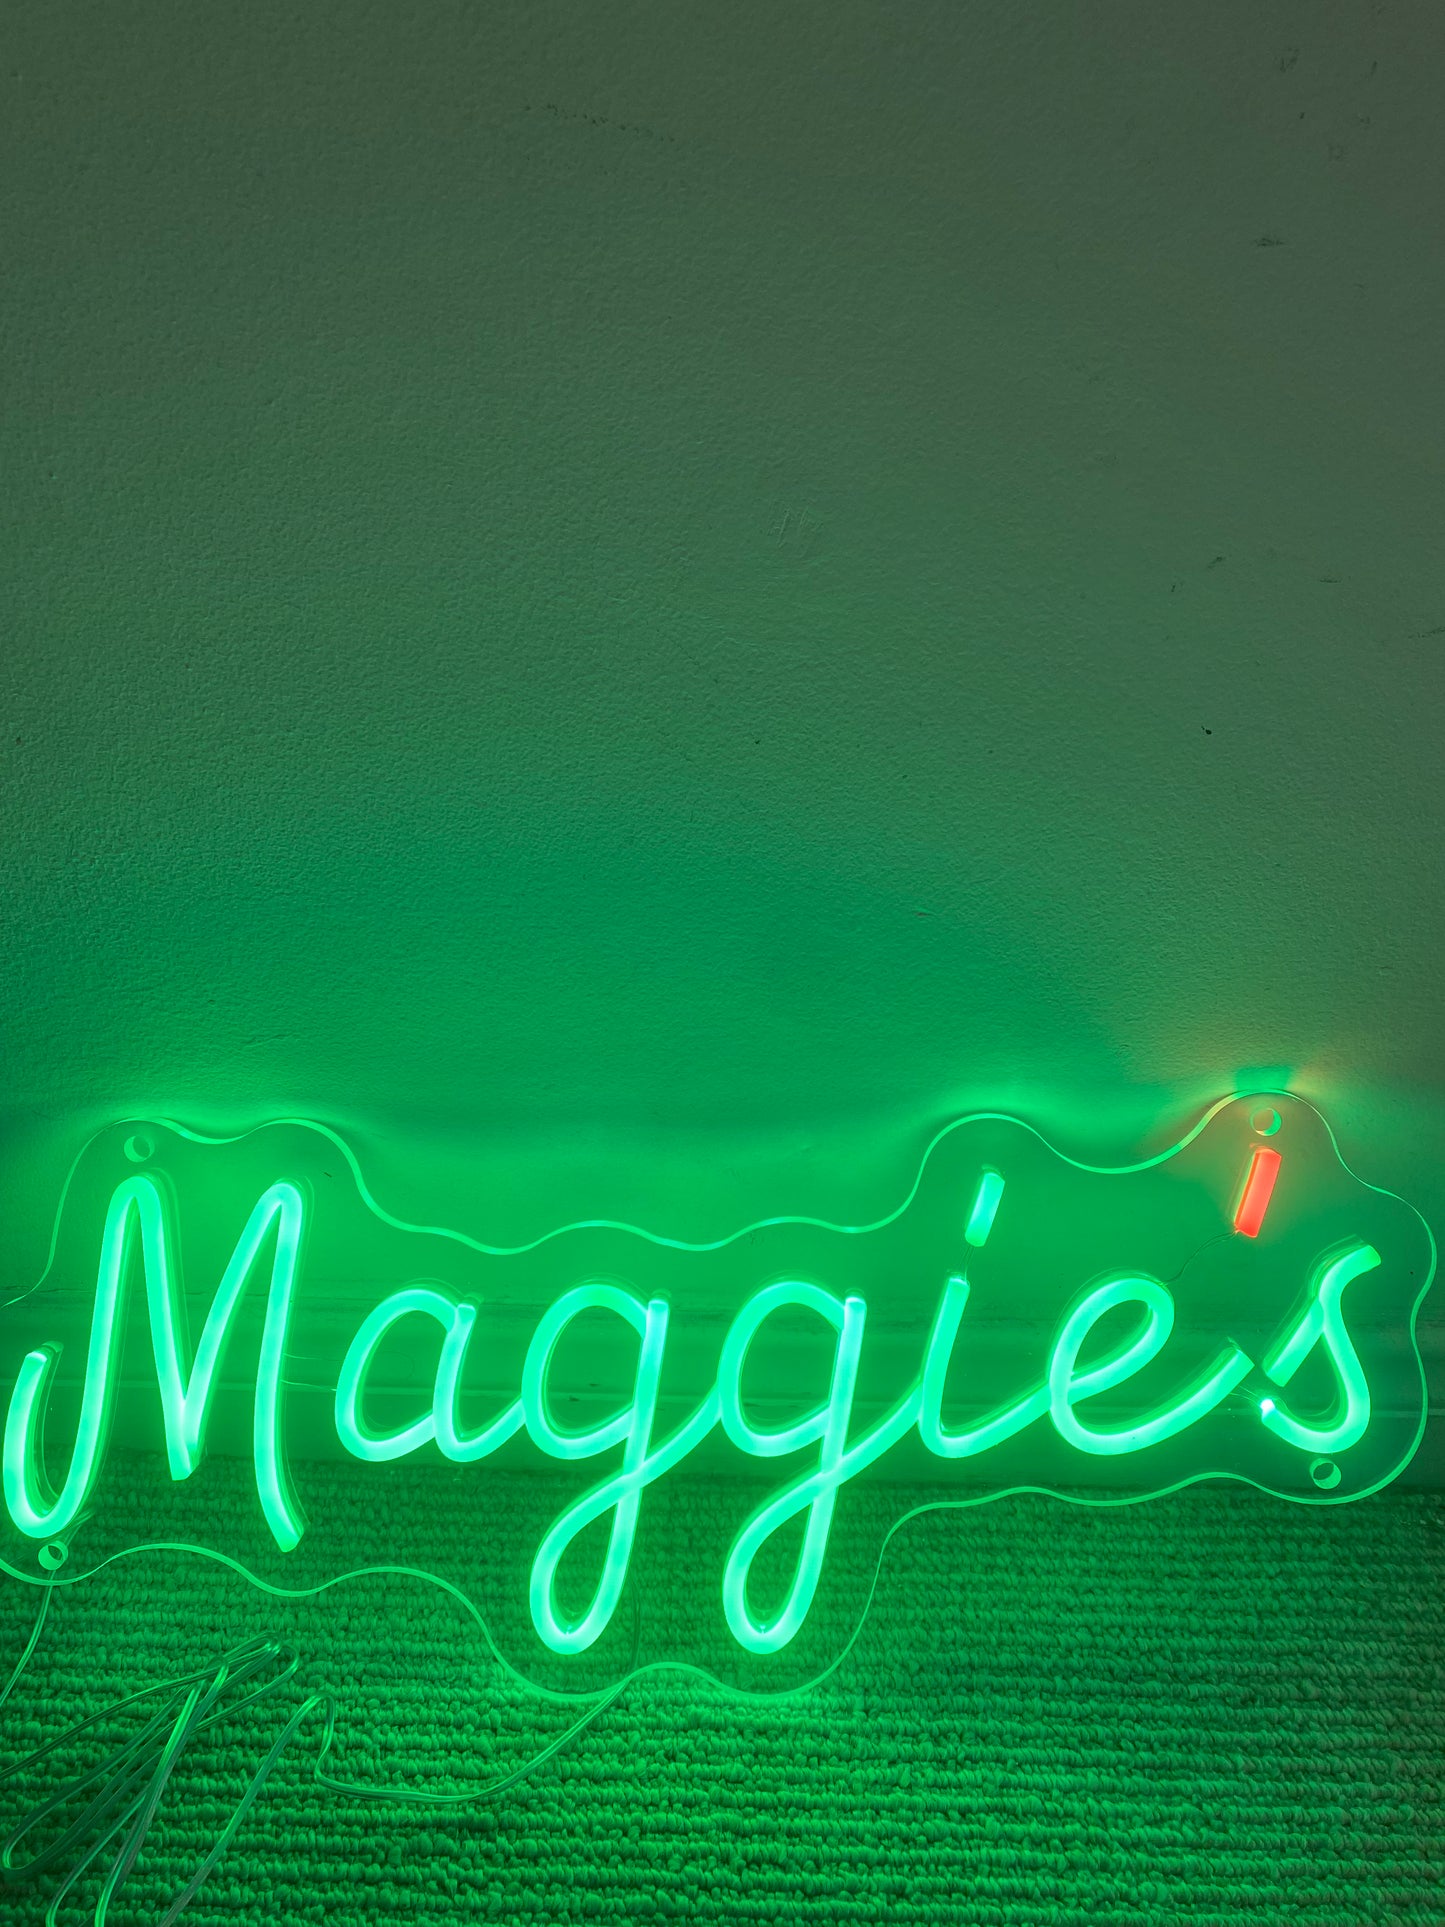 Maggie's - Mini-neon w orange apostrophe - Enter to win!